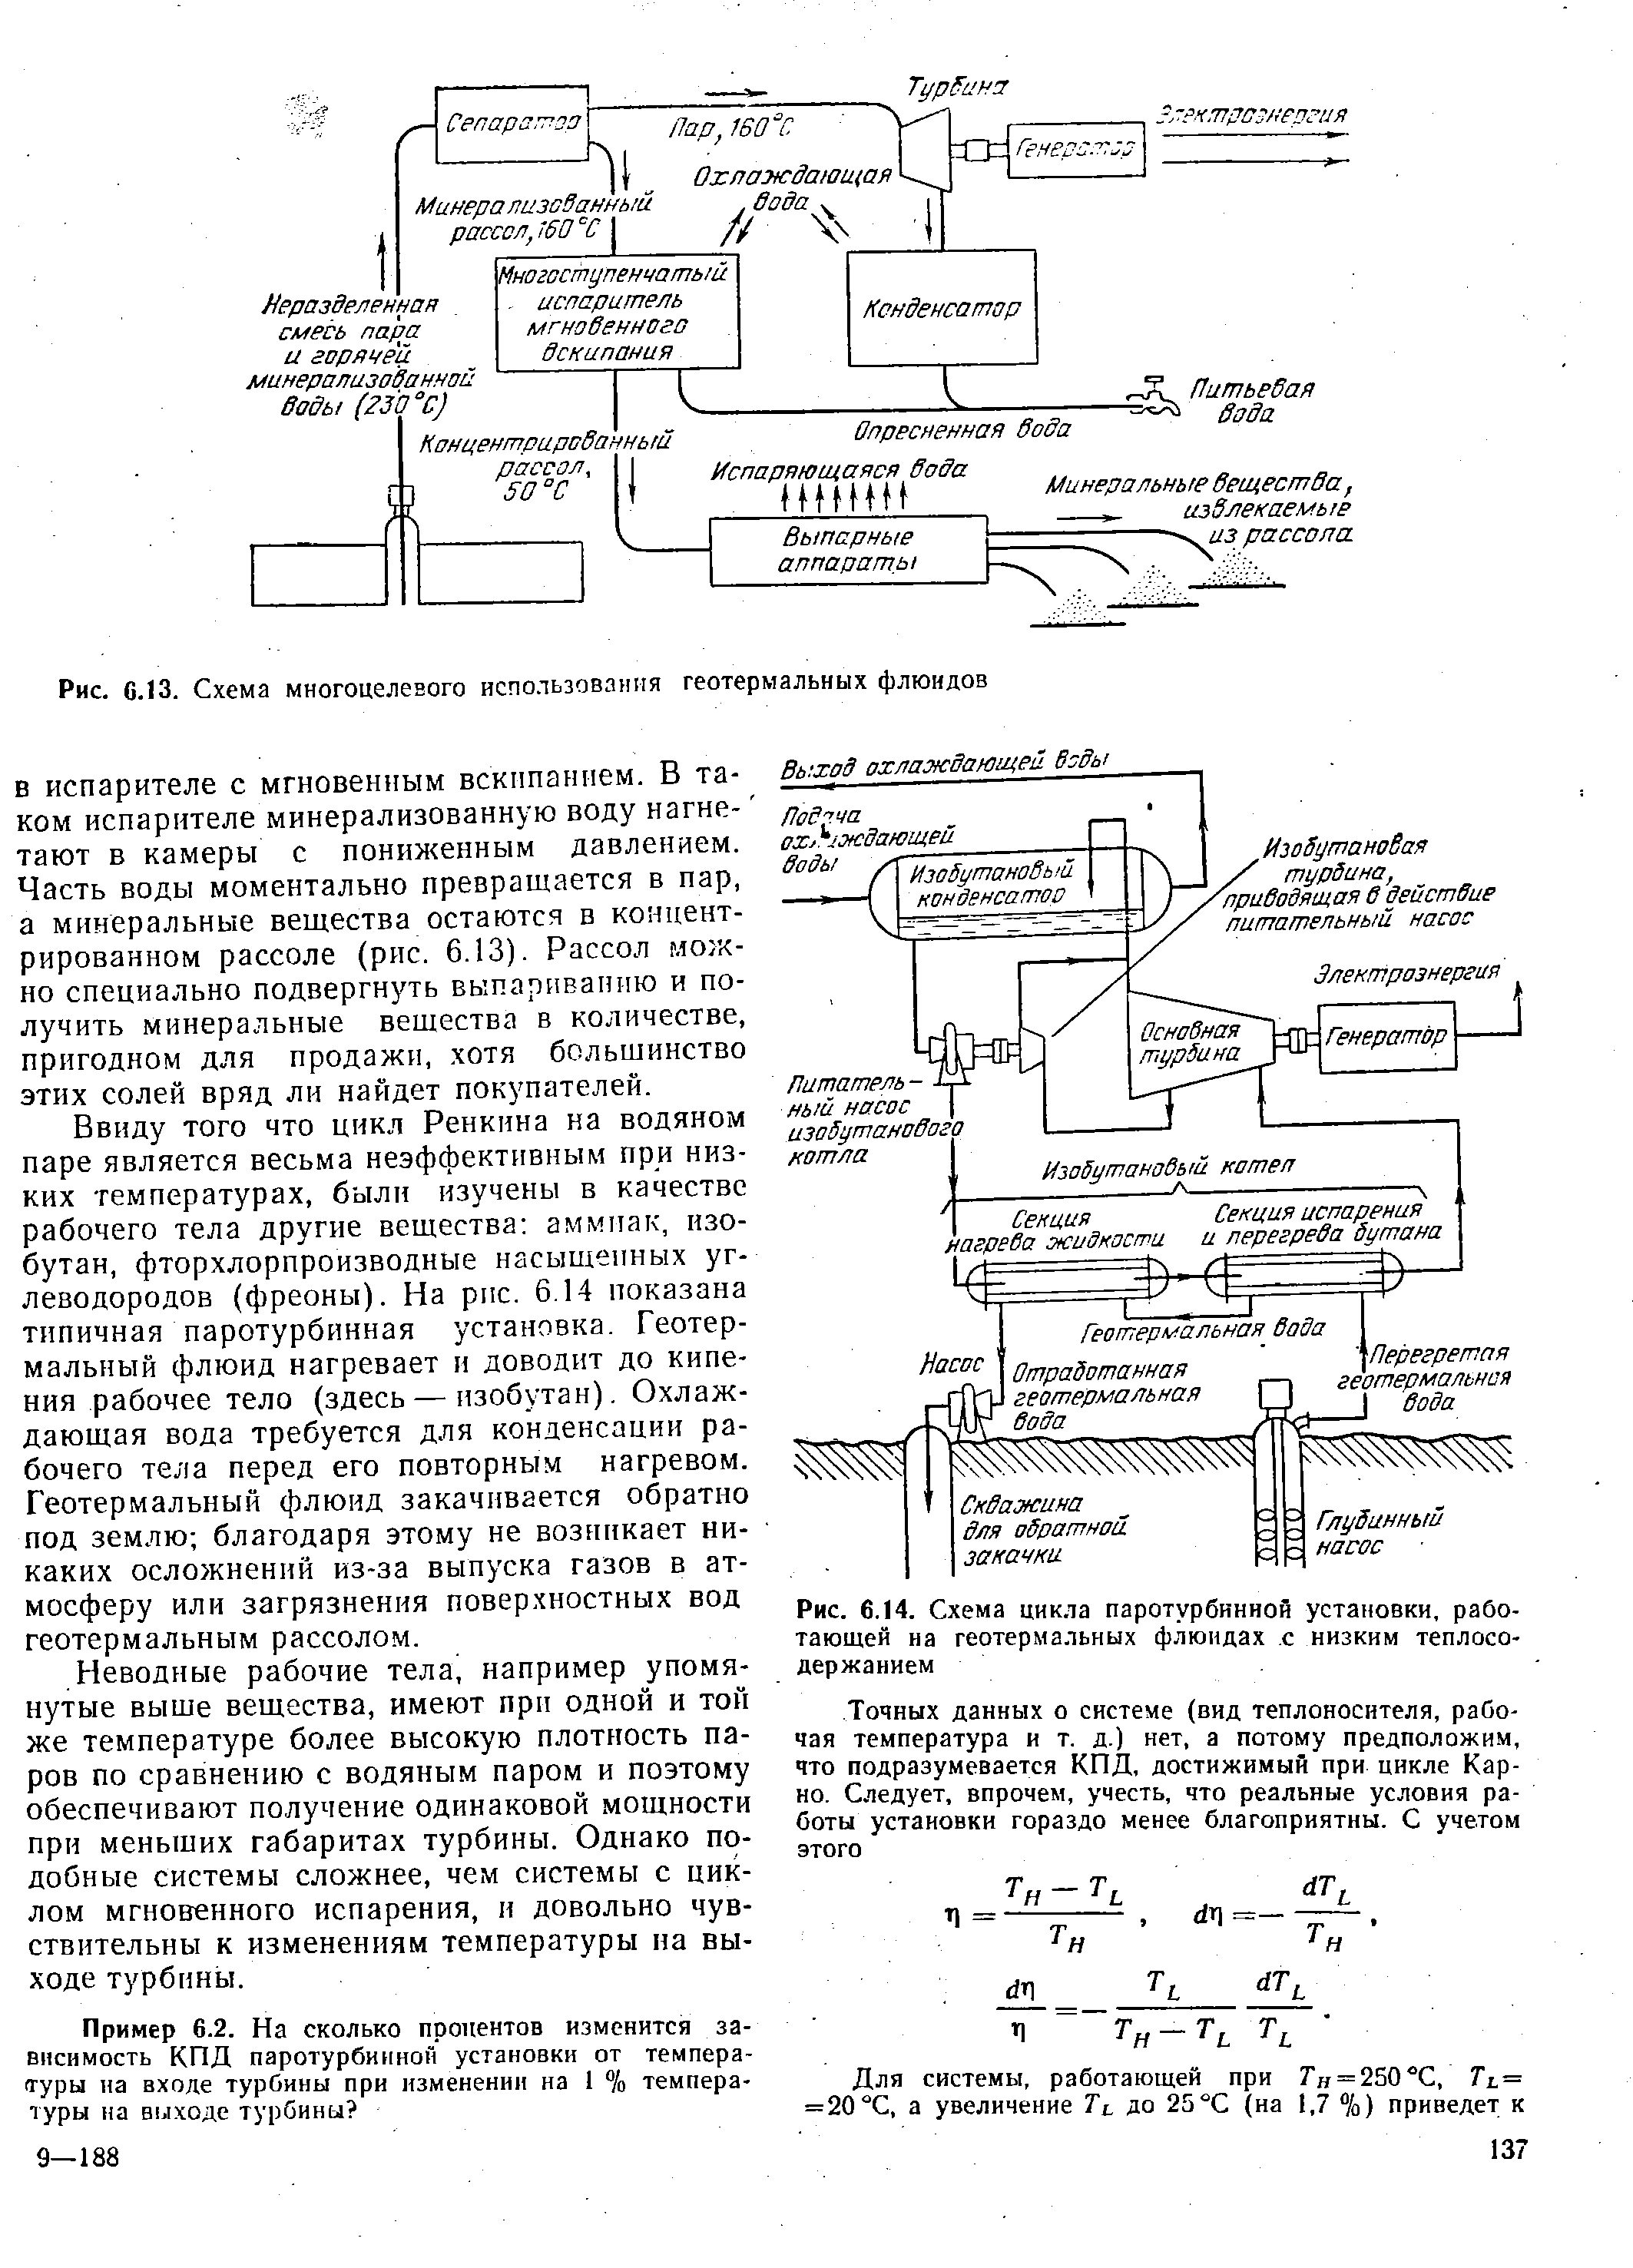 Рис. G.13. Схема многоцелевого использования геотермальных флюидов
